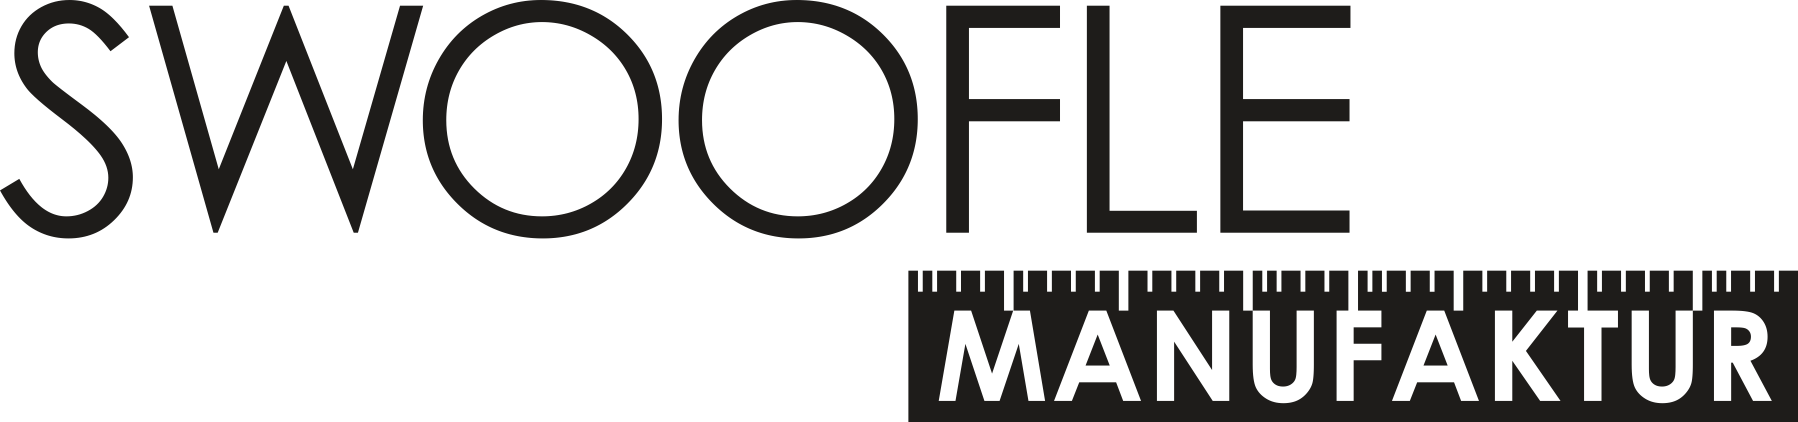 Logo SWOOFLE Manufaktur - SWOOFLE Mietmöbel Europaweit Overnight